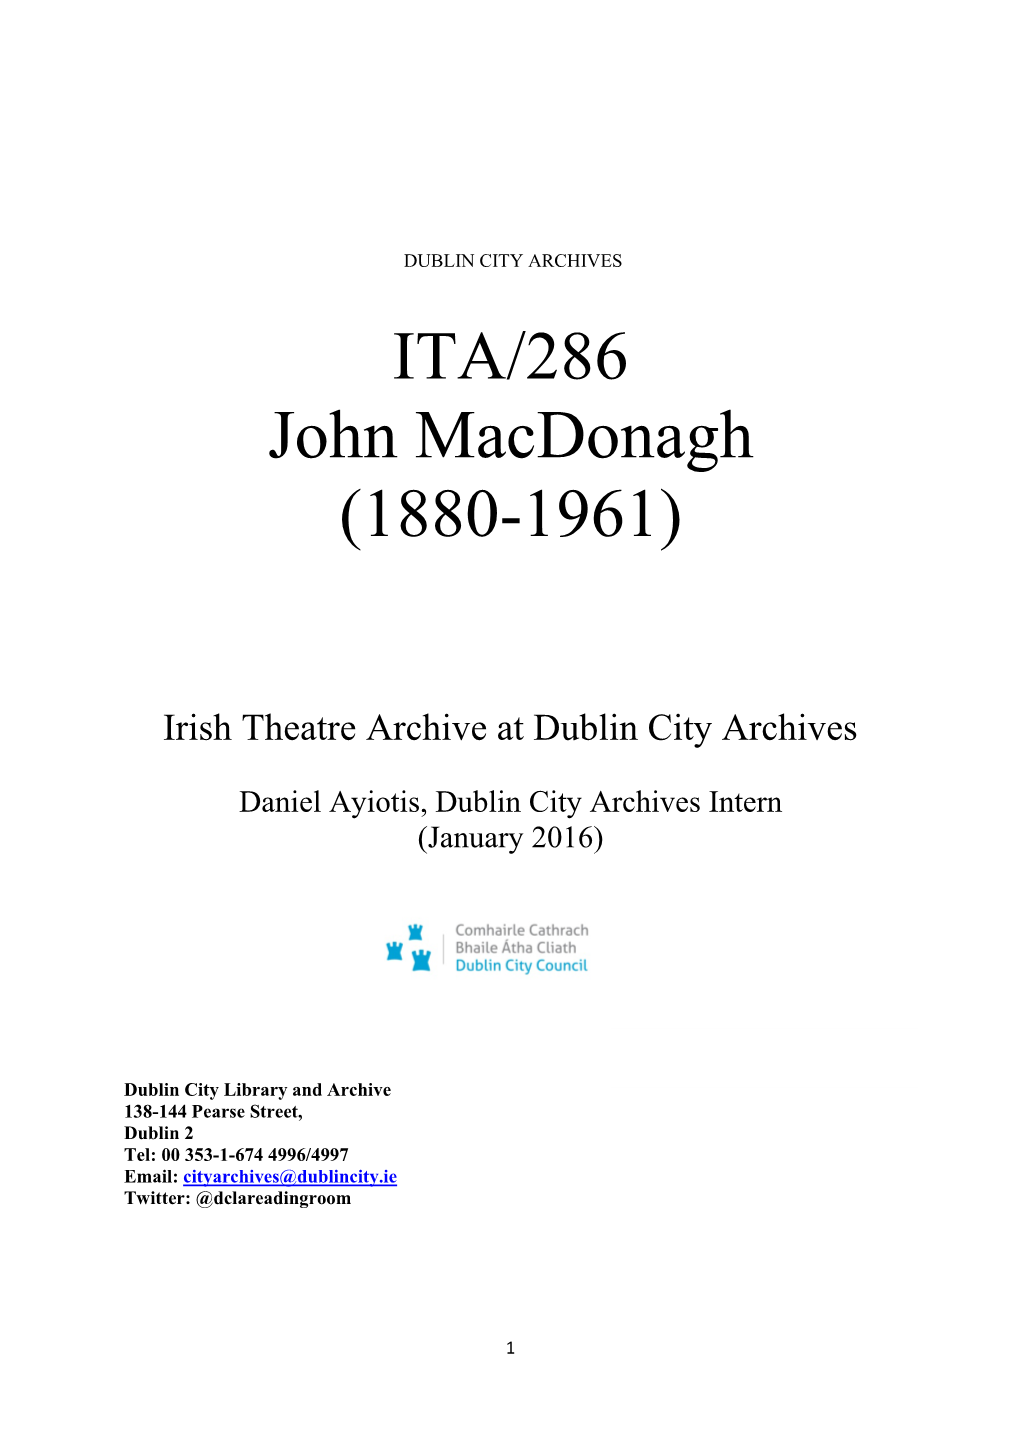 ITA 286 John Macdonagh